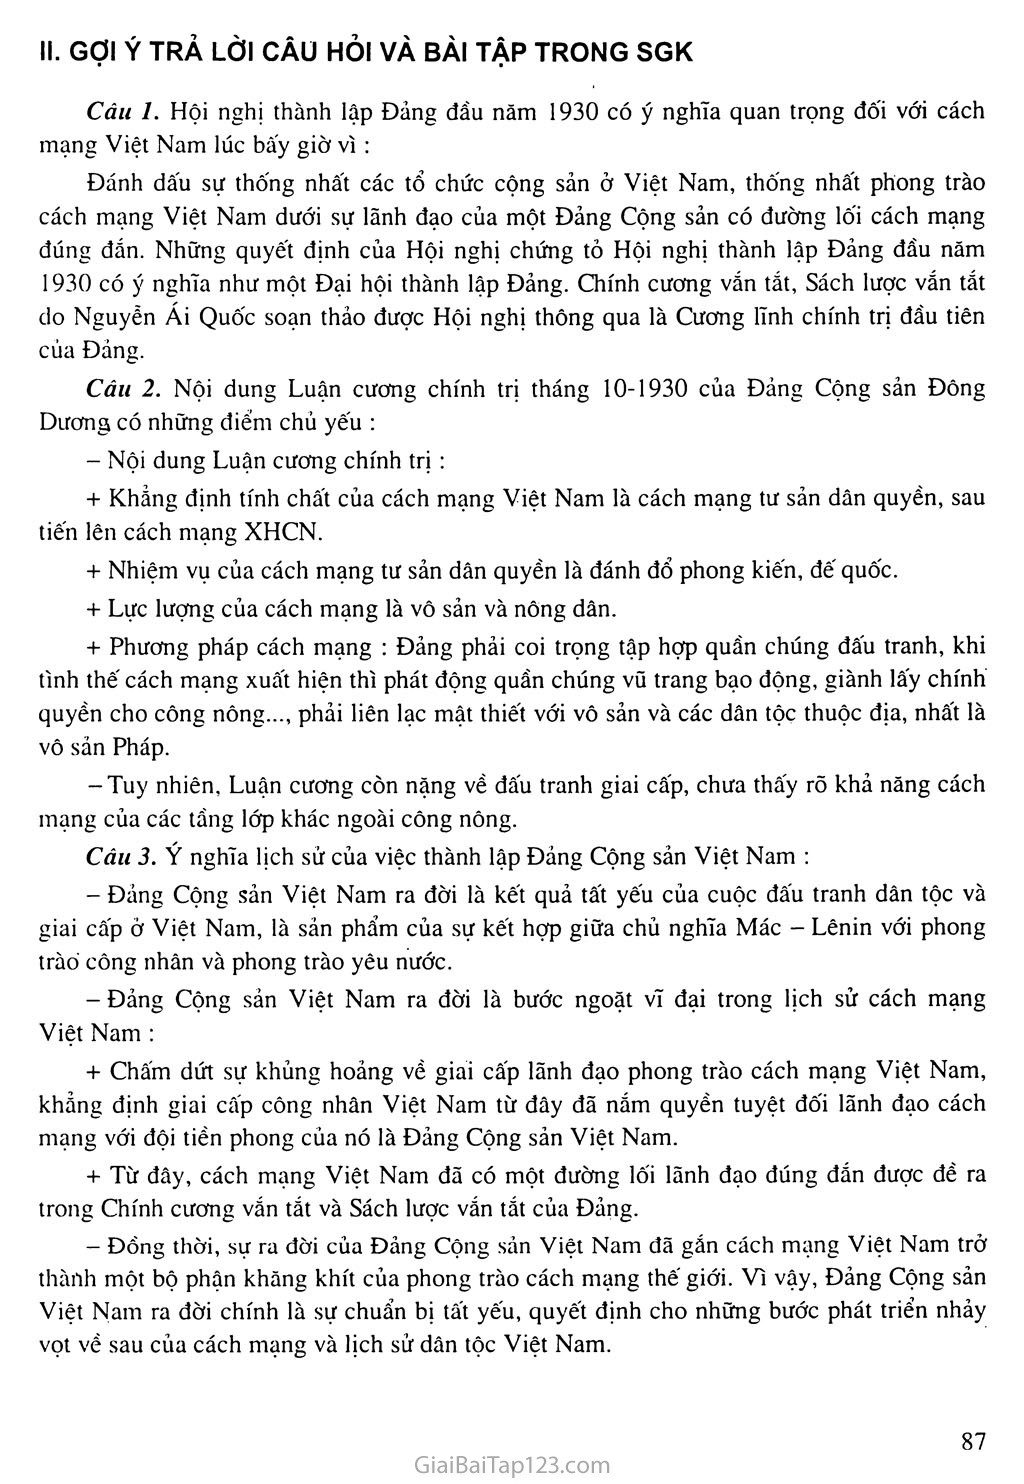 Bài 18: Đảng Cộng sản Việt Nam ra đời trang 4